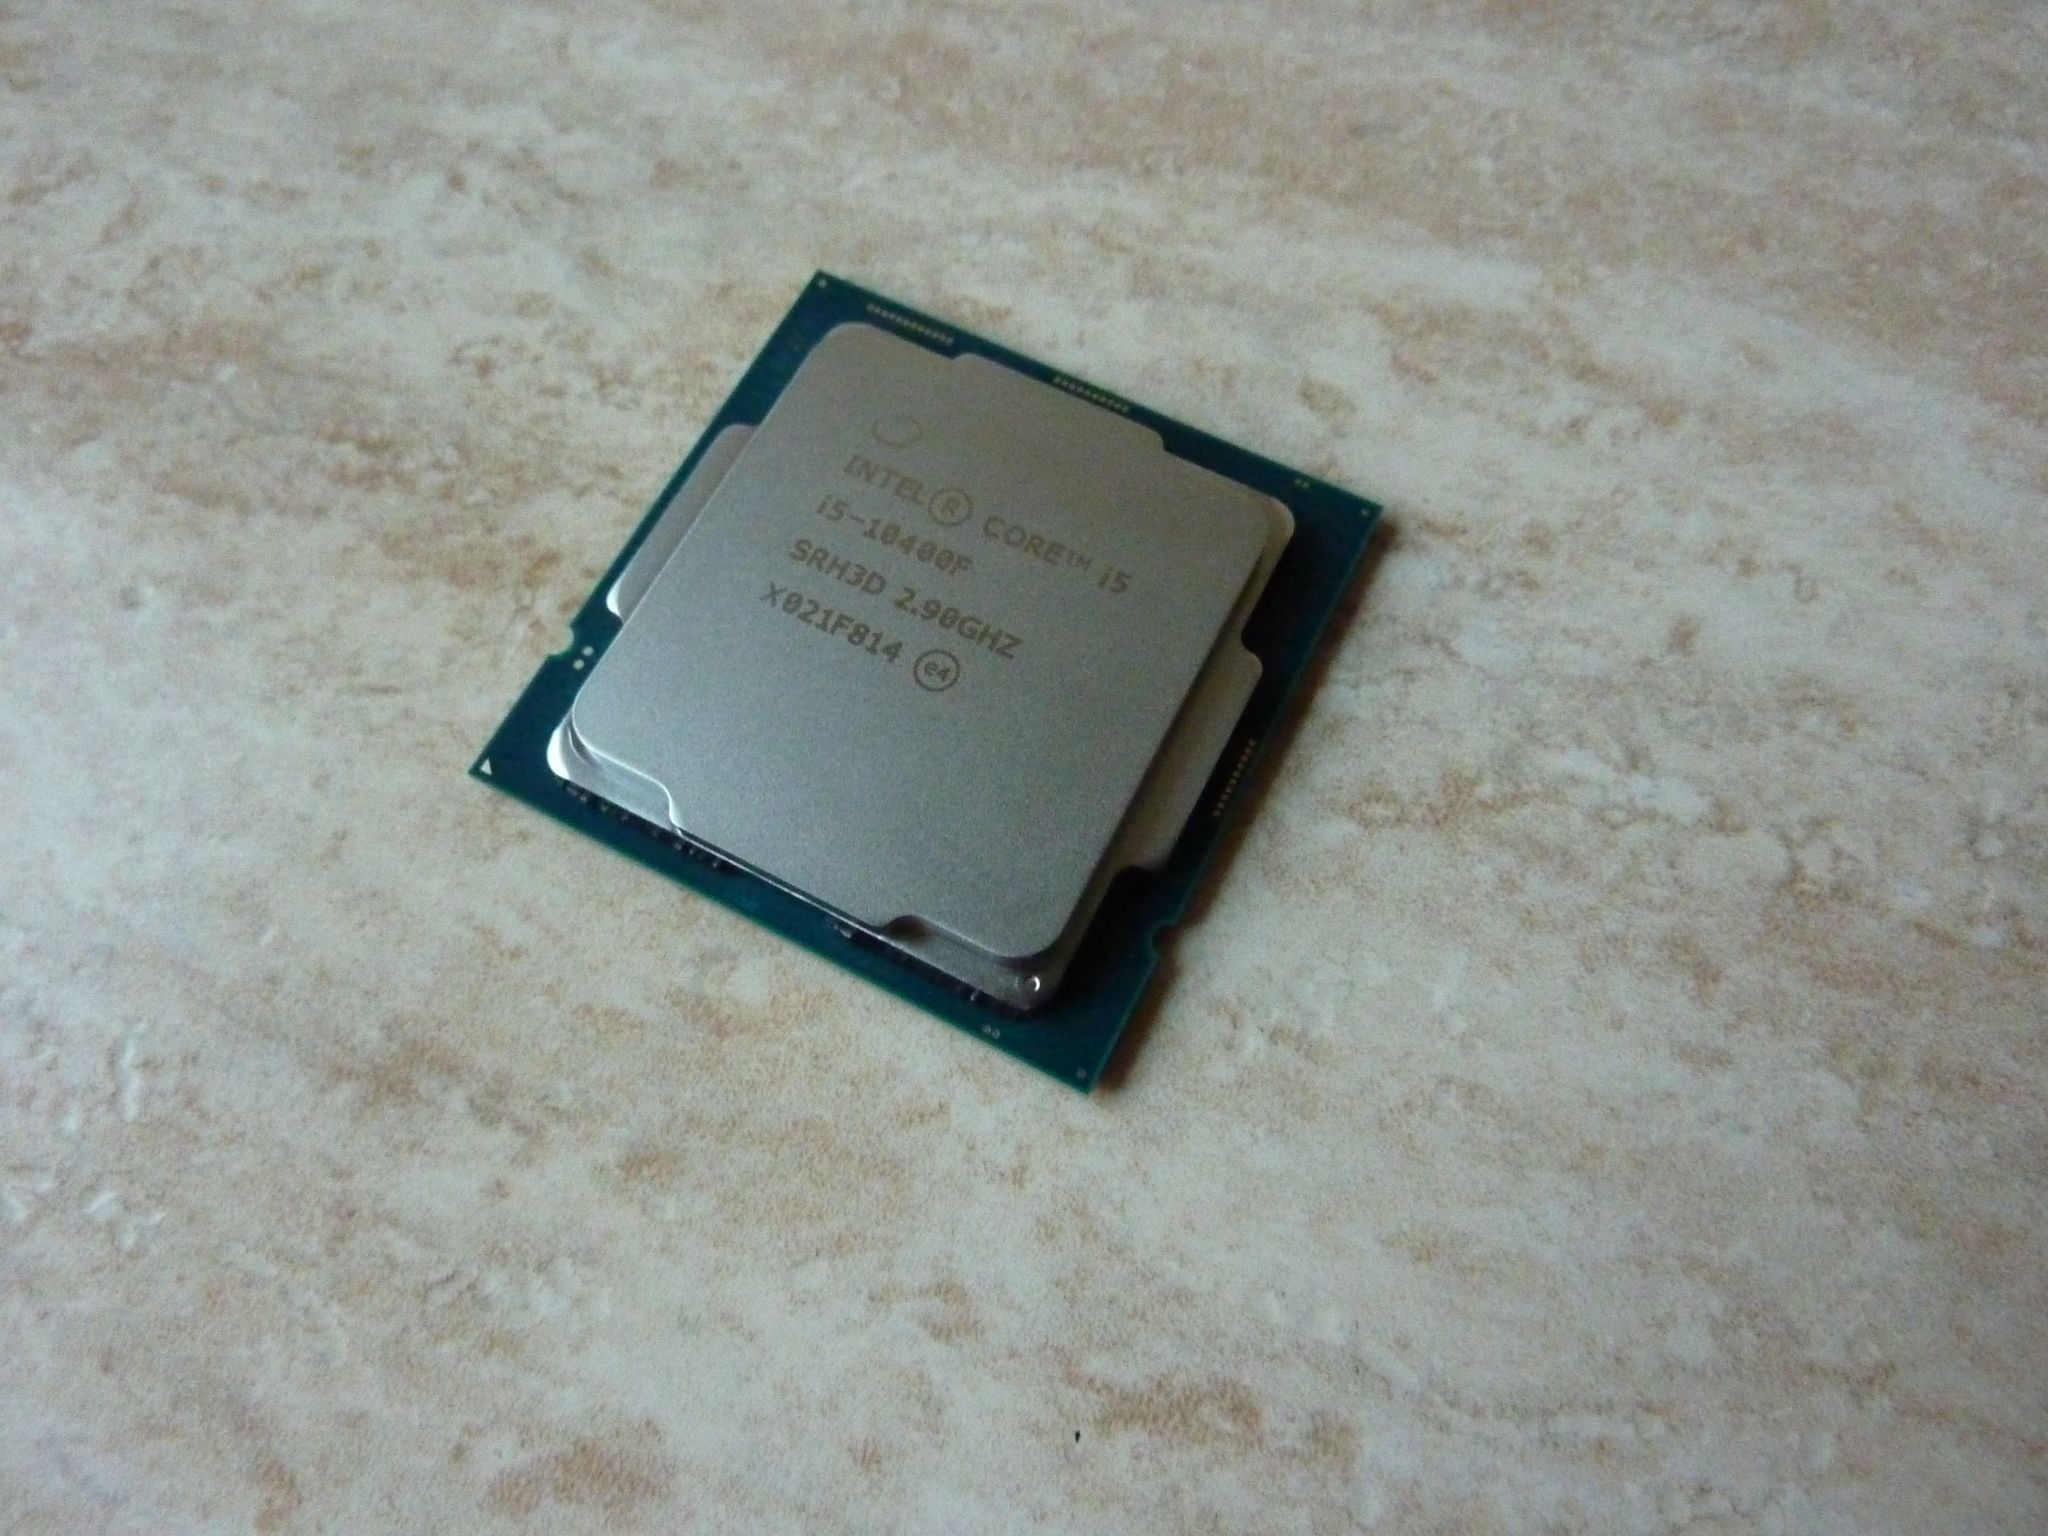 Intel core i5 10400f 2.9 ггц. Core i5 10400f. Процессор Intel Core i5-10400f. Core i5-10400f lga1200. Процессор Intel Core i5 10400f, LGA 1200.